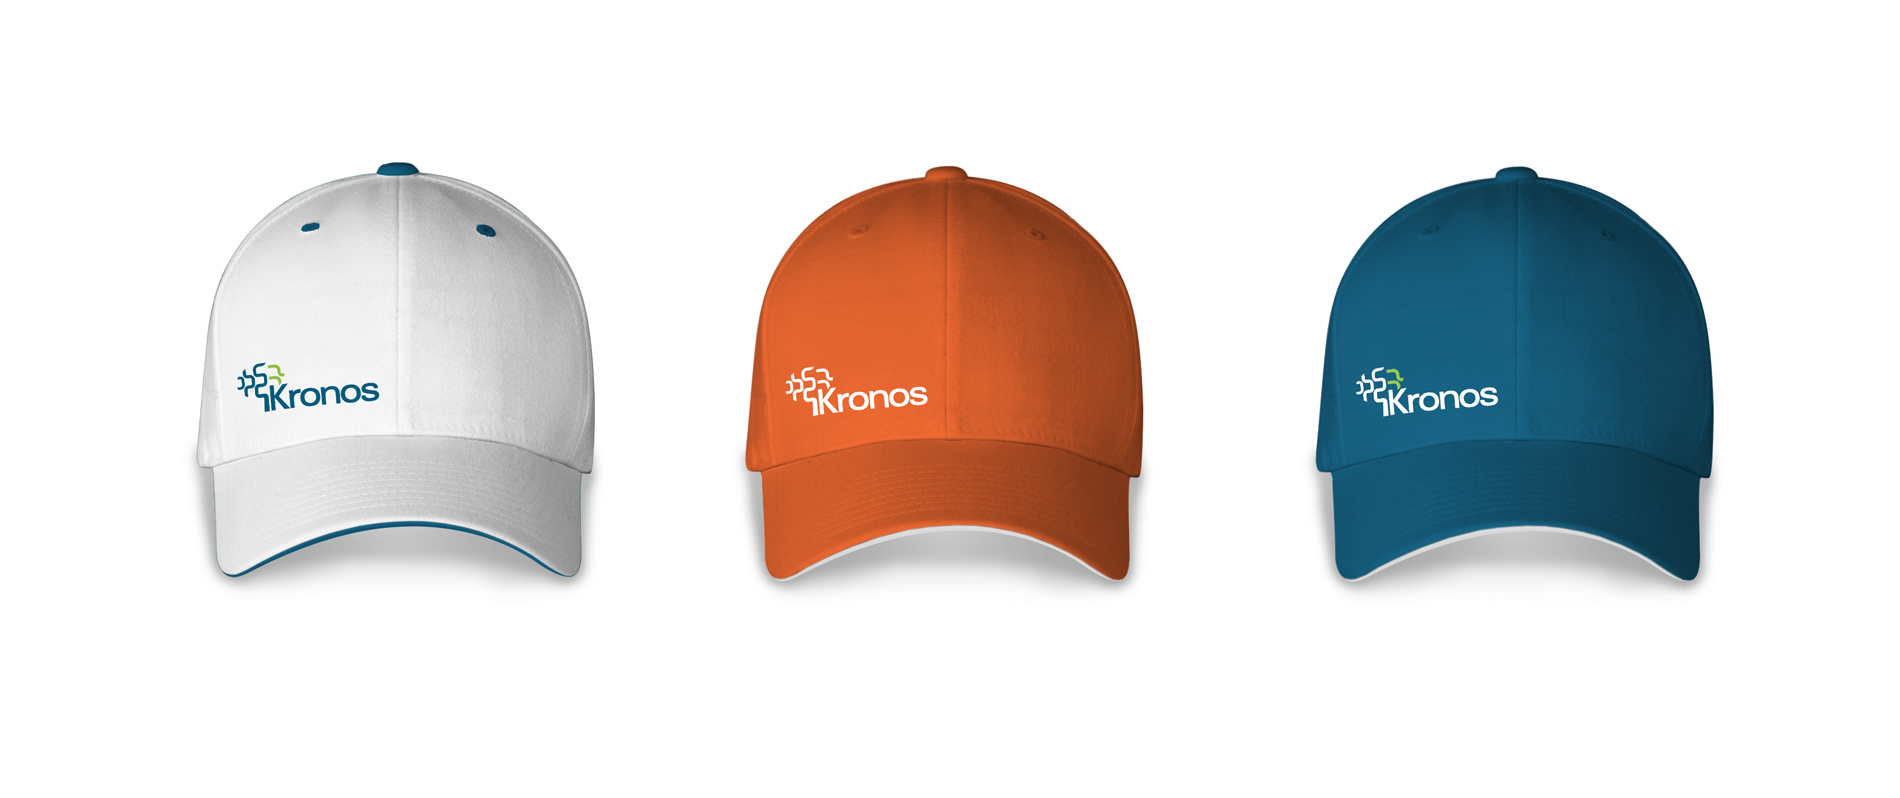 Создание бренда научно-производственной компании «Кронос»: разработка логотипа и фирменного стиля, брендбук, нейминг, имиджевые рекламные коммуникации, авторский дизайн теплиц, упаковка, создание сайта.